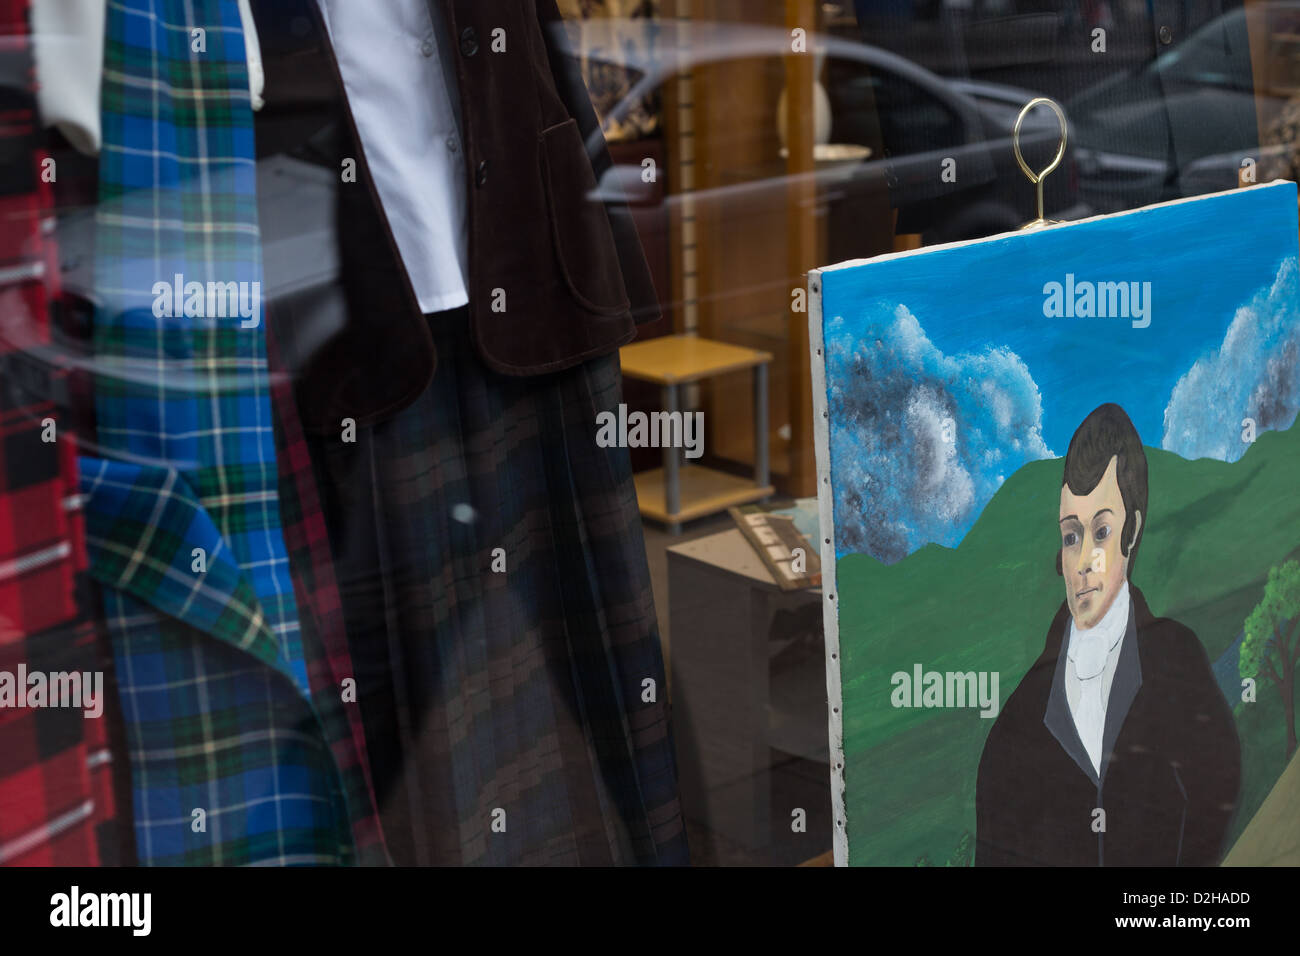 Poète écossais Robert Burns, représentés dans des peintures dans les rues de Glasgow, Ecosse. Banque D'Images